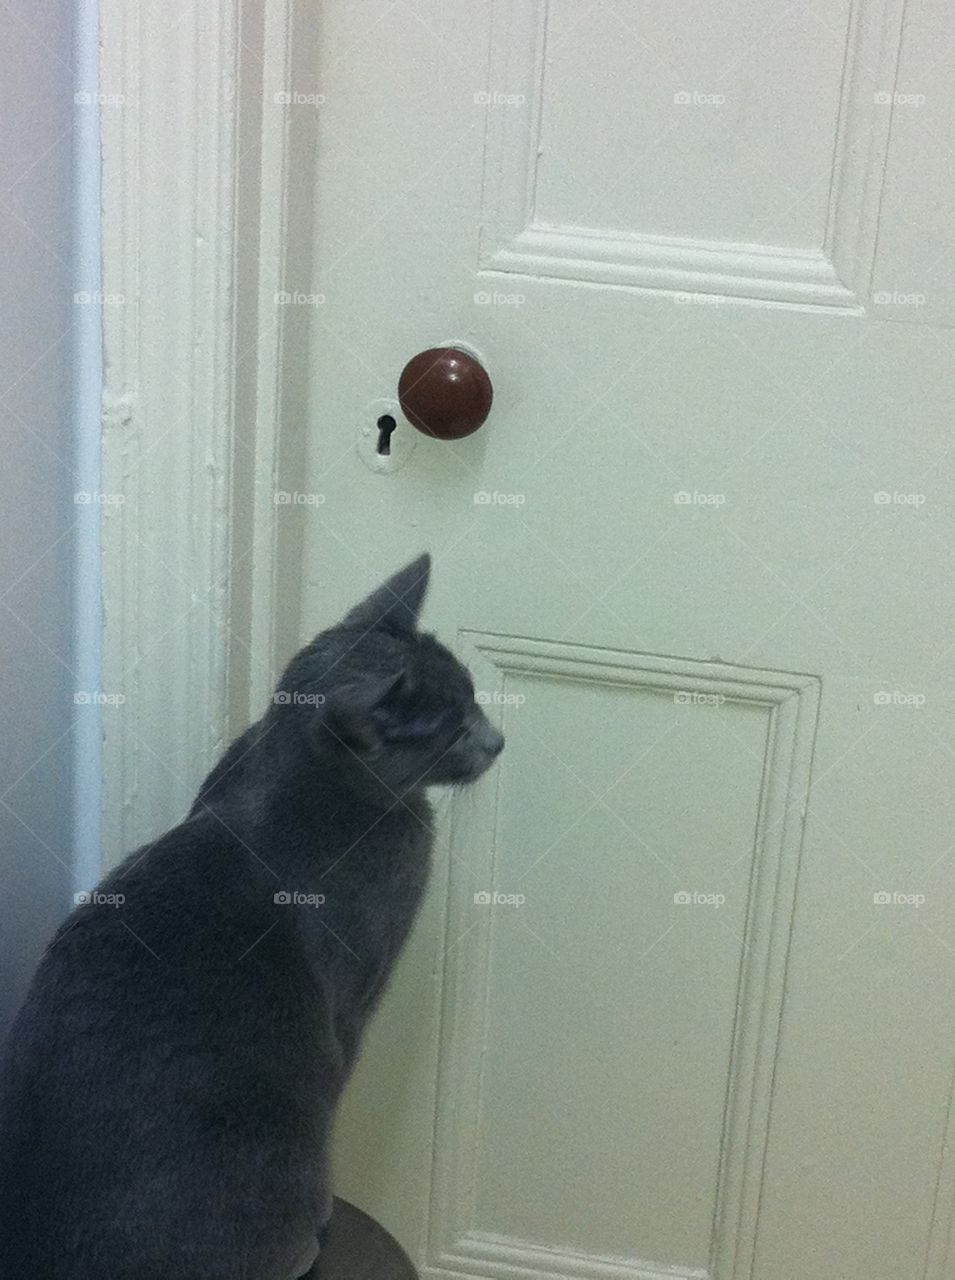 Cat in front of door